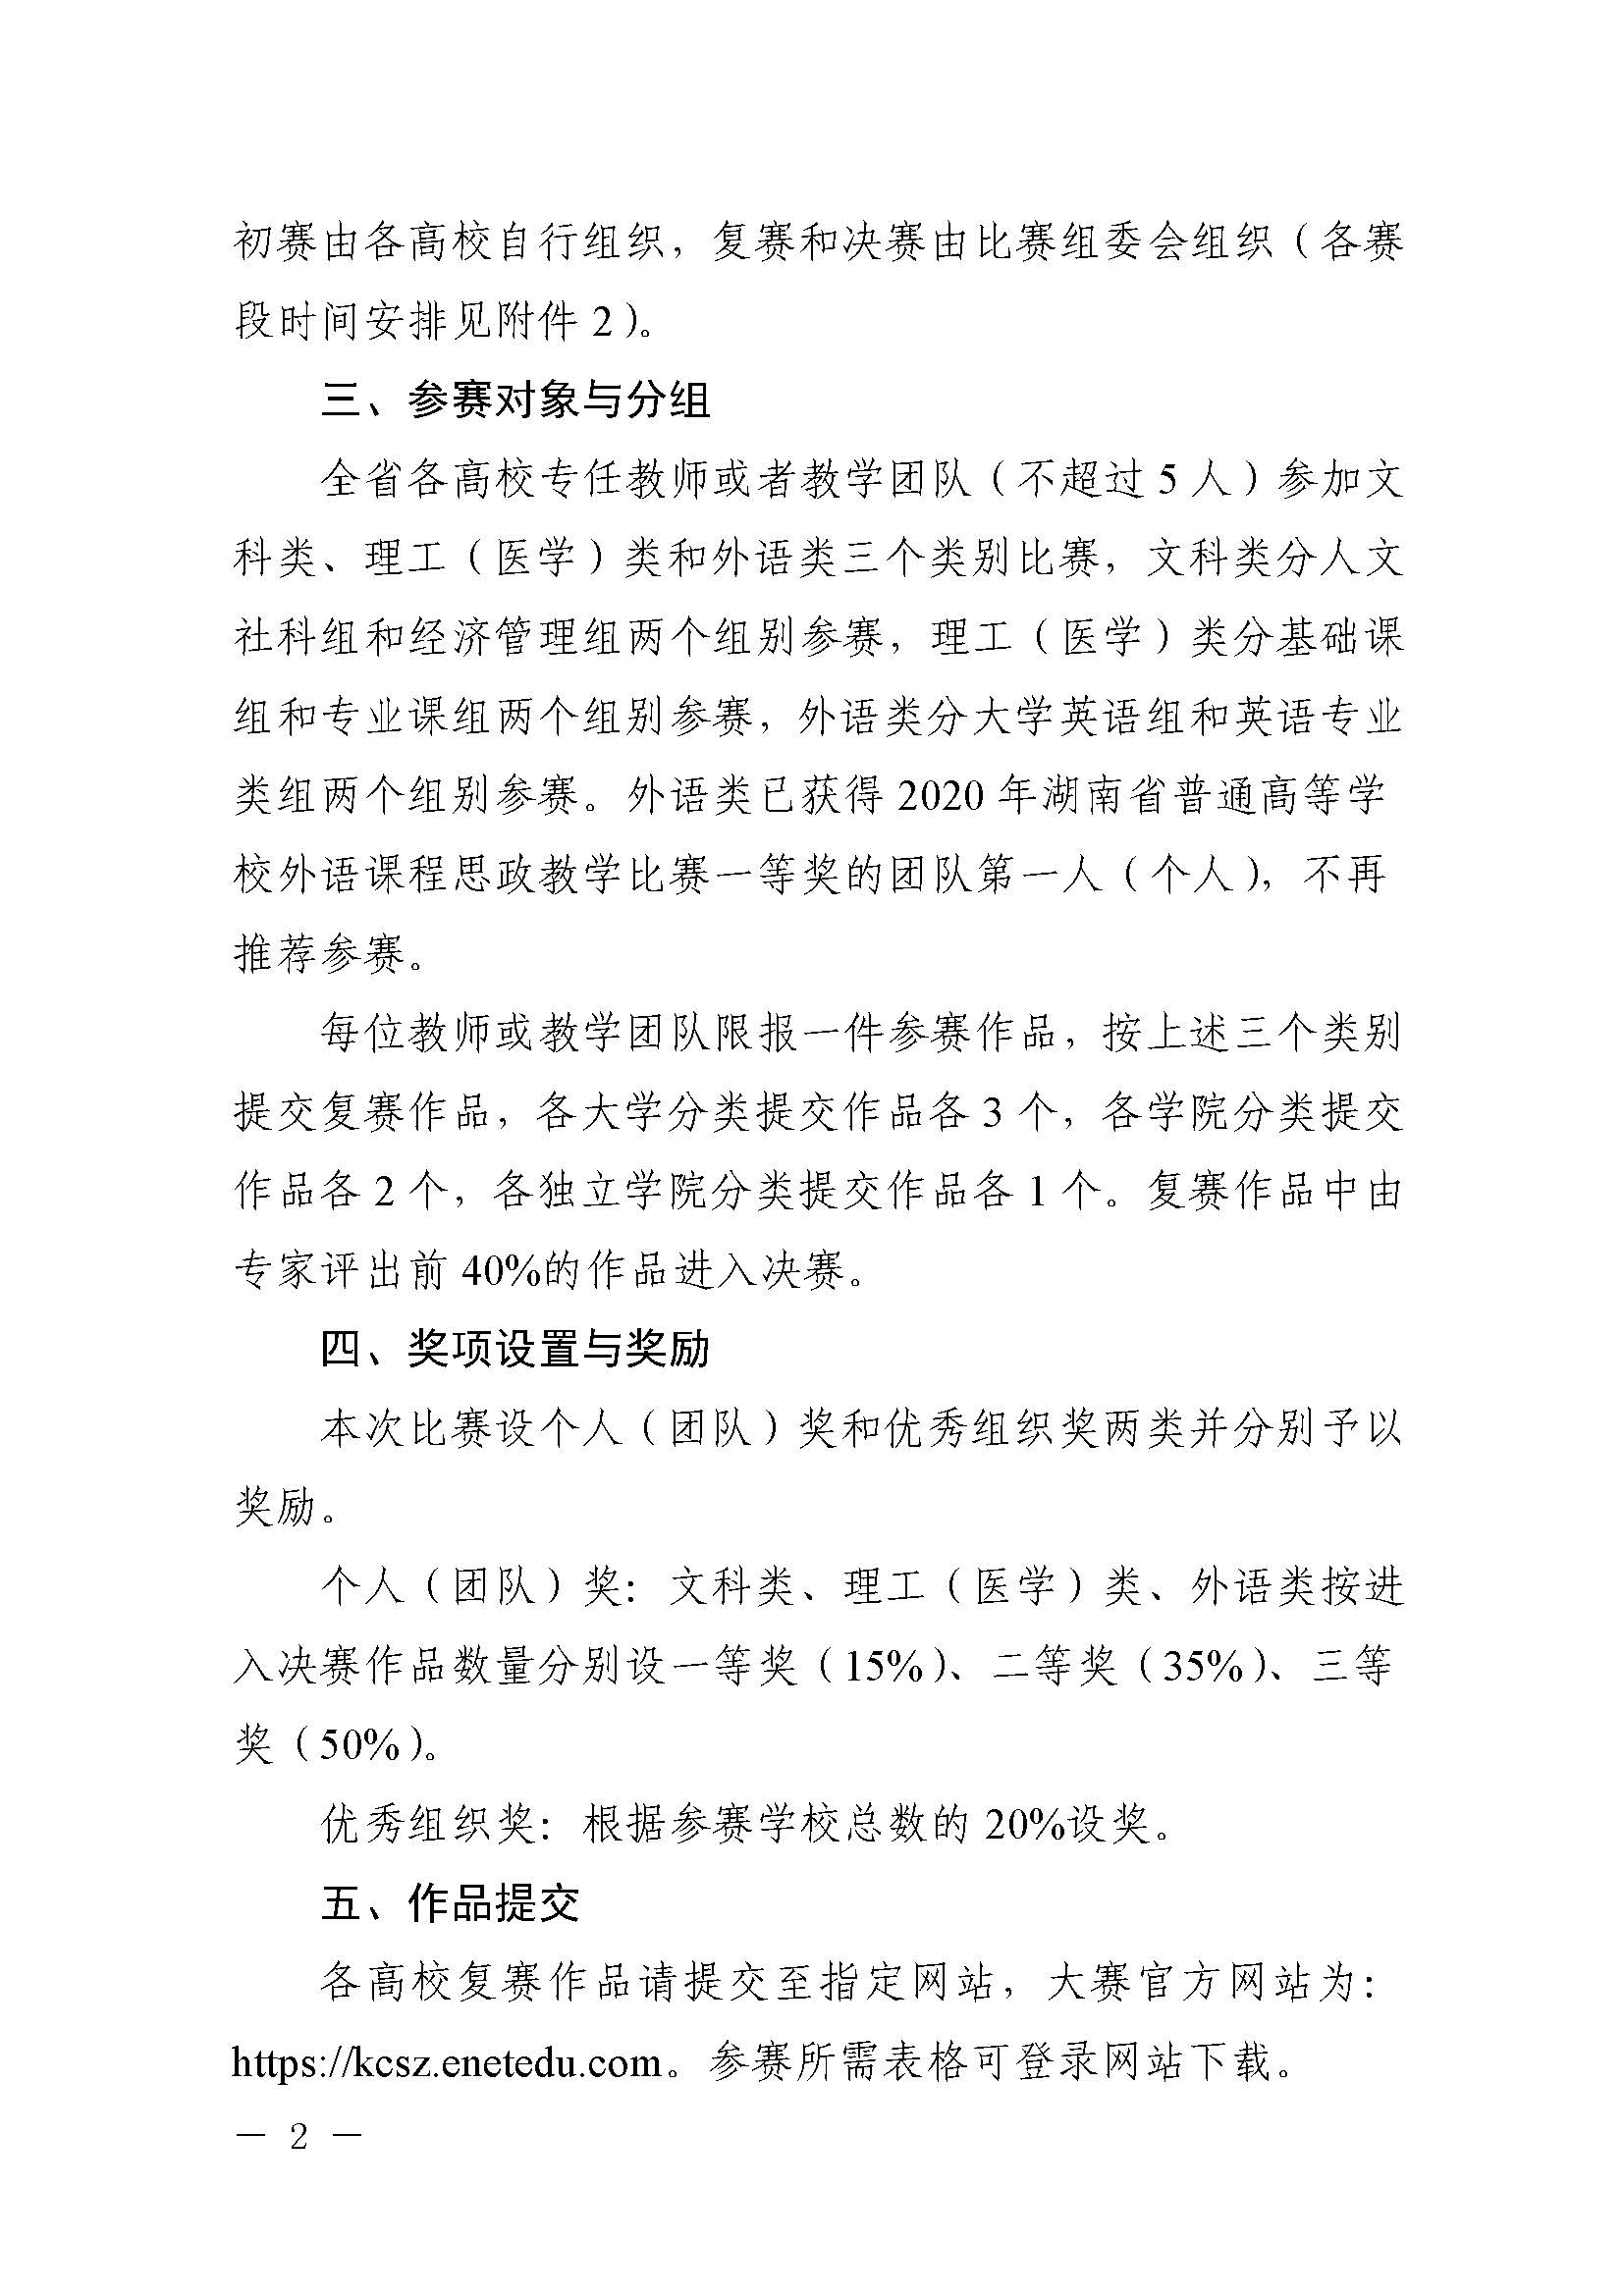 关于举办2021年湖南省普通高等学校课程思政教学比赛的通知_页面_02.jpg